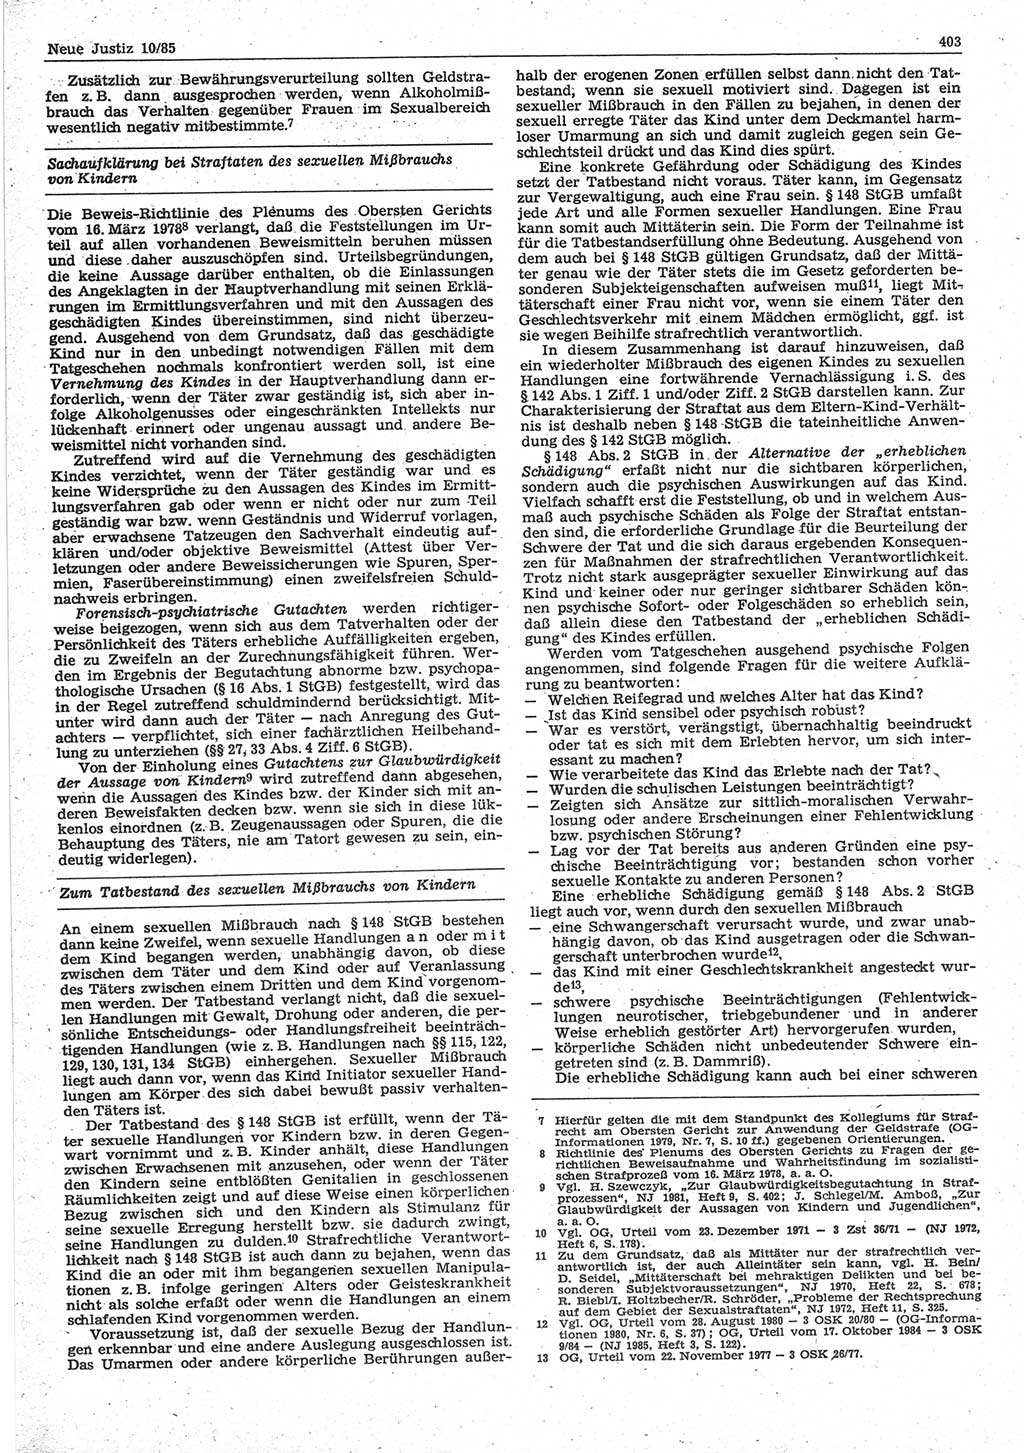 Neue Justiz (NJ), Zeitschrift für sozialistisches Recht und Gesetzlichkeit [Deutsche Demokratische Republik (DDR)], 39. Jahrgang 1985, Seite 403 (NJ DDR 1985, S. 403)